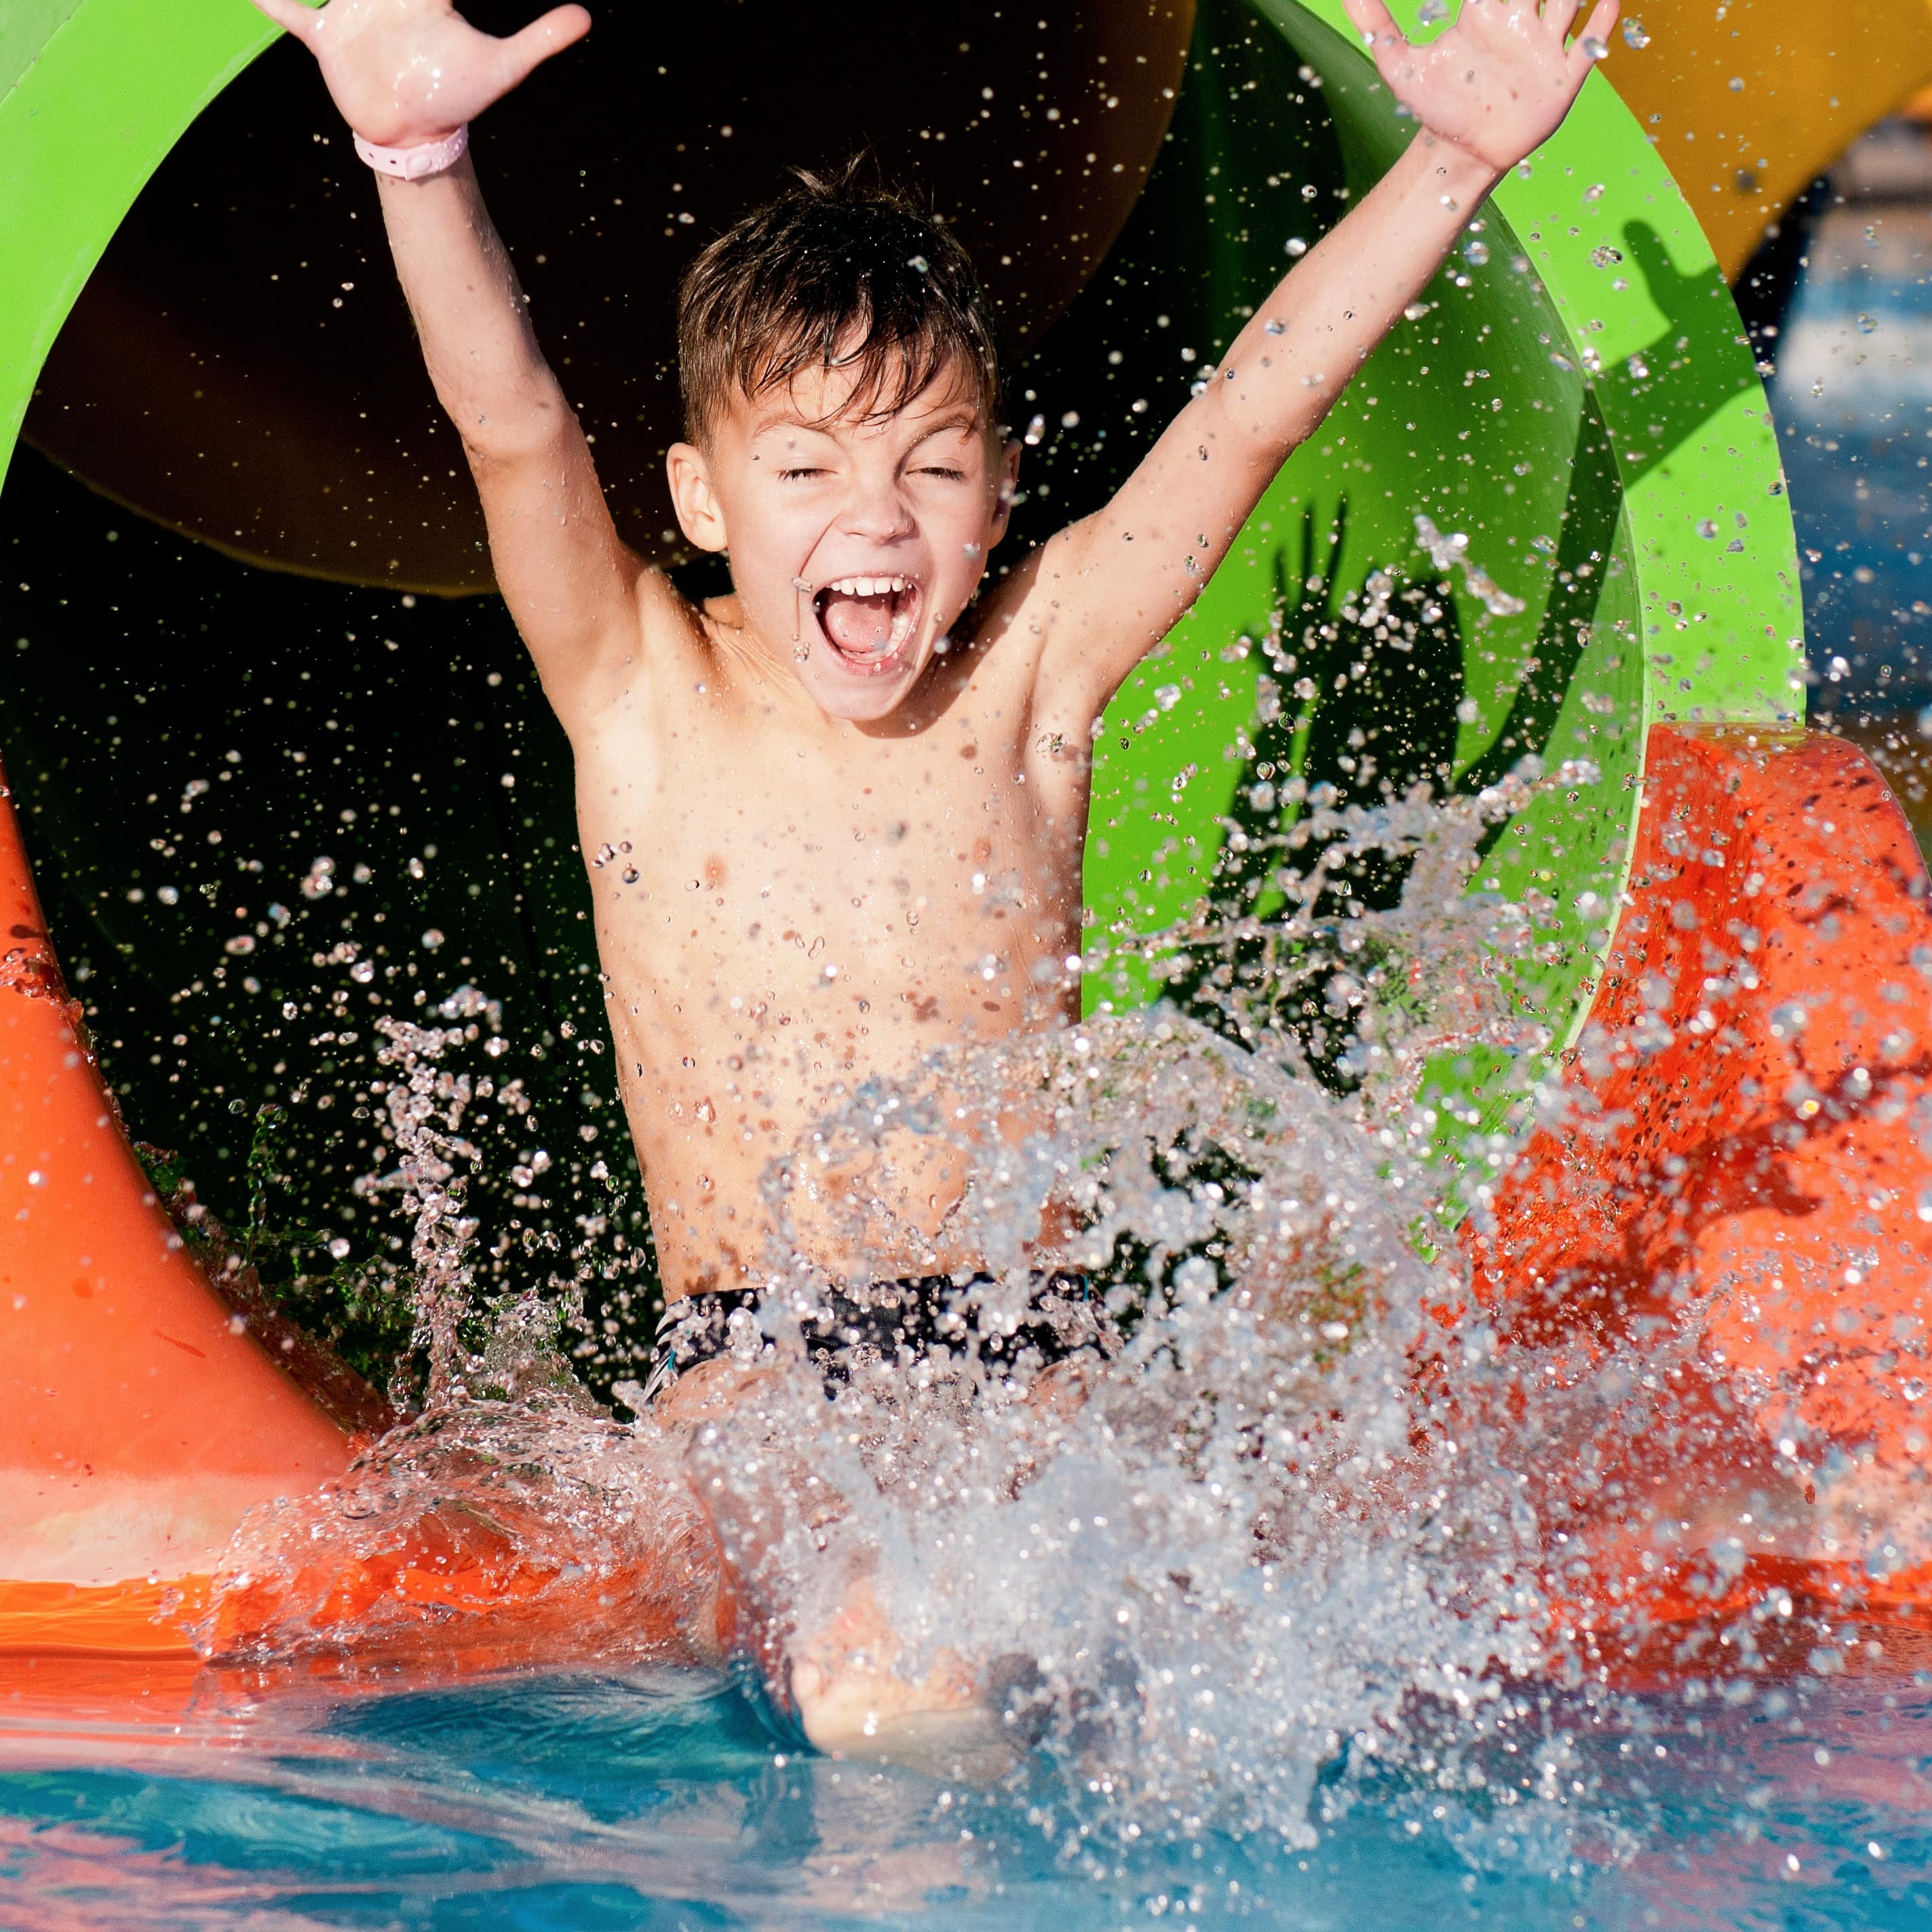 Ein Junge saust aus einer Wasserrutsche ins Wasser und reißt die Arme hoch.